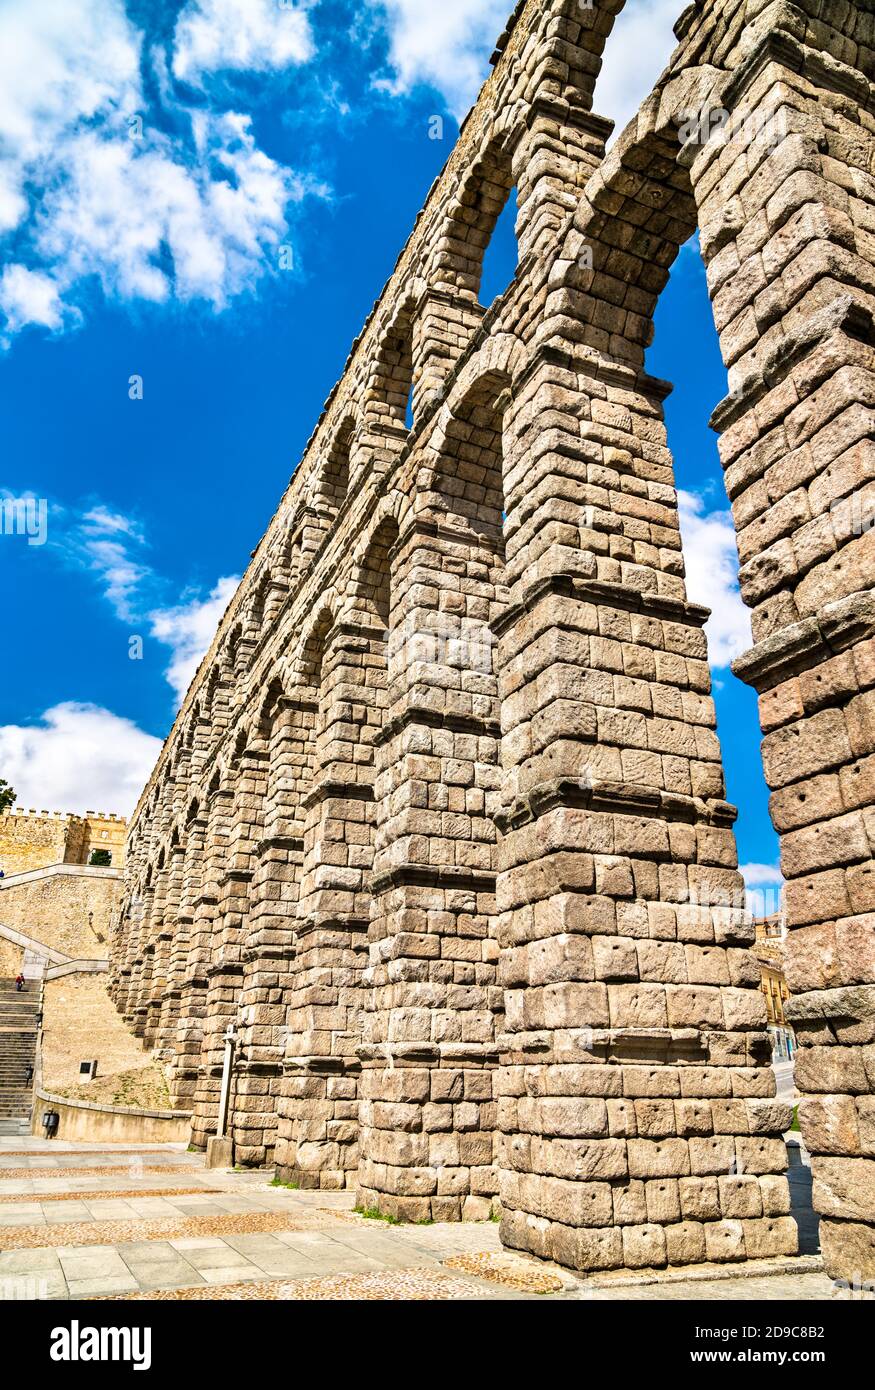 Ancient roman aqueduct in Segovia, Spain Stock Photo